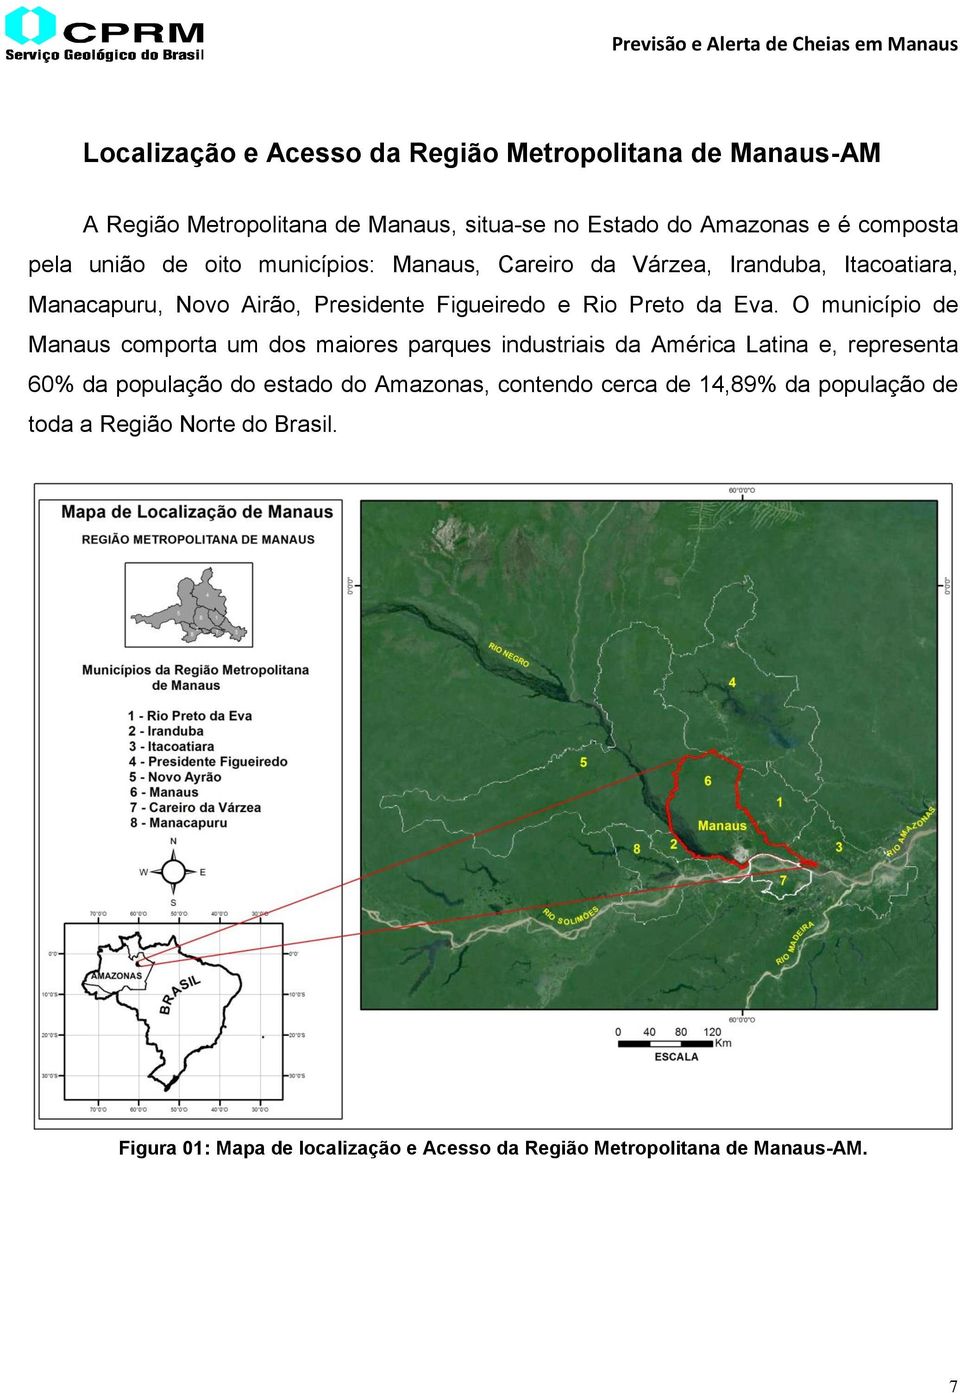 O município de Manaus comporta um dos maiores parques industriais da América Latina e, representa 60% da população do estado do Amazonas,